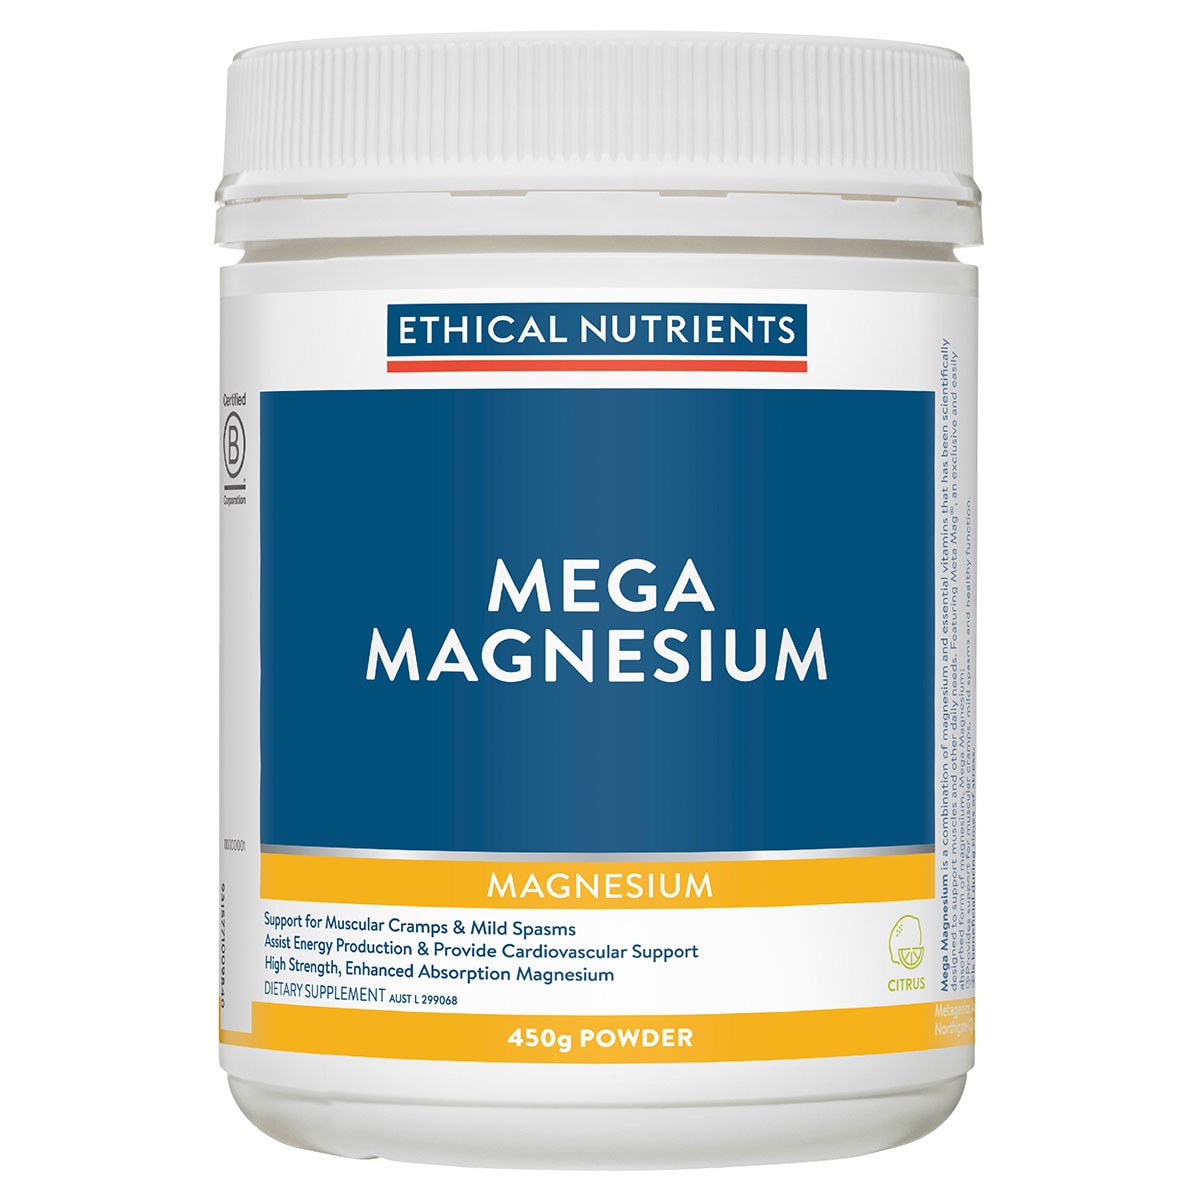 Ethical Nutrients Mega Magnesium Citrus 450g Powder Australia